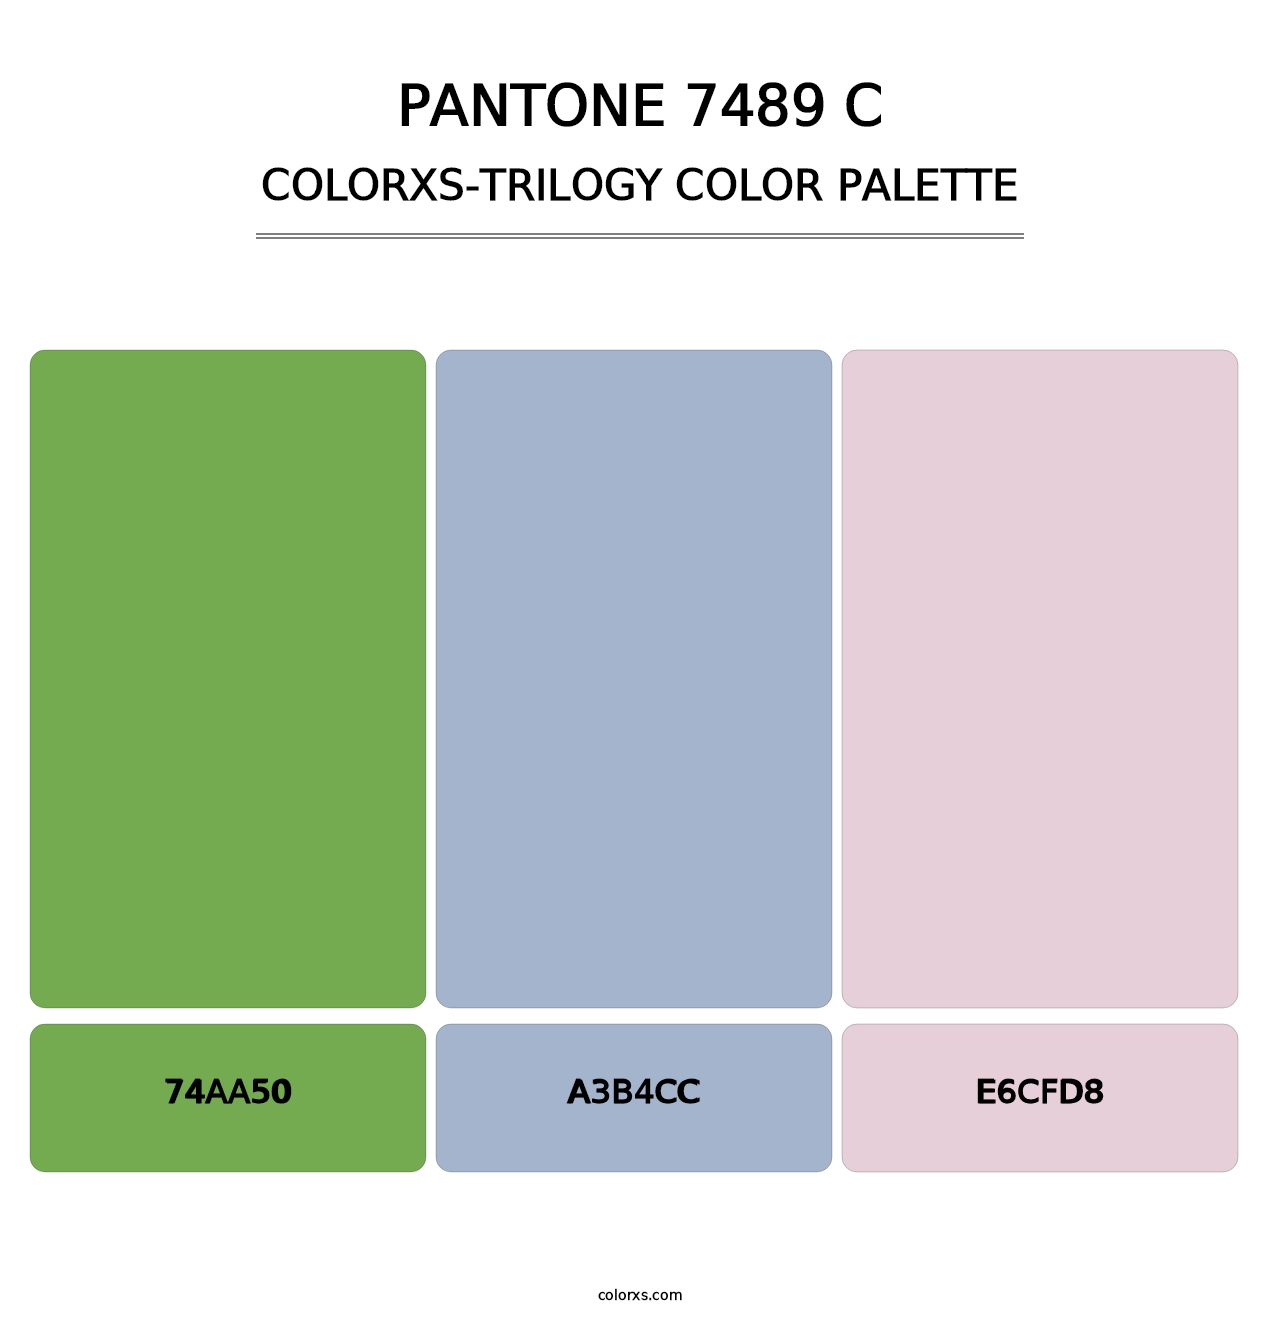 PANTONE 7489 C - Colorxs Trilogy Palette